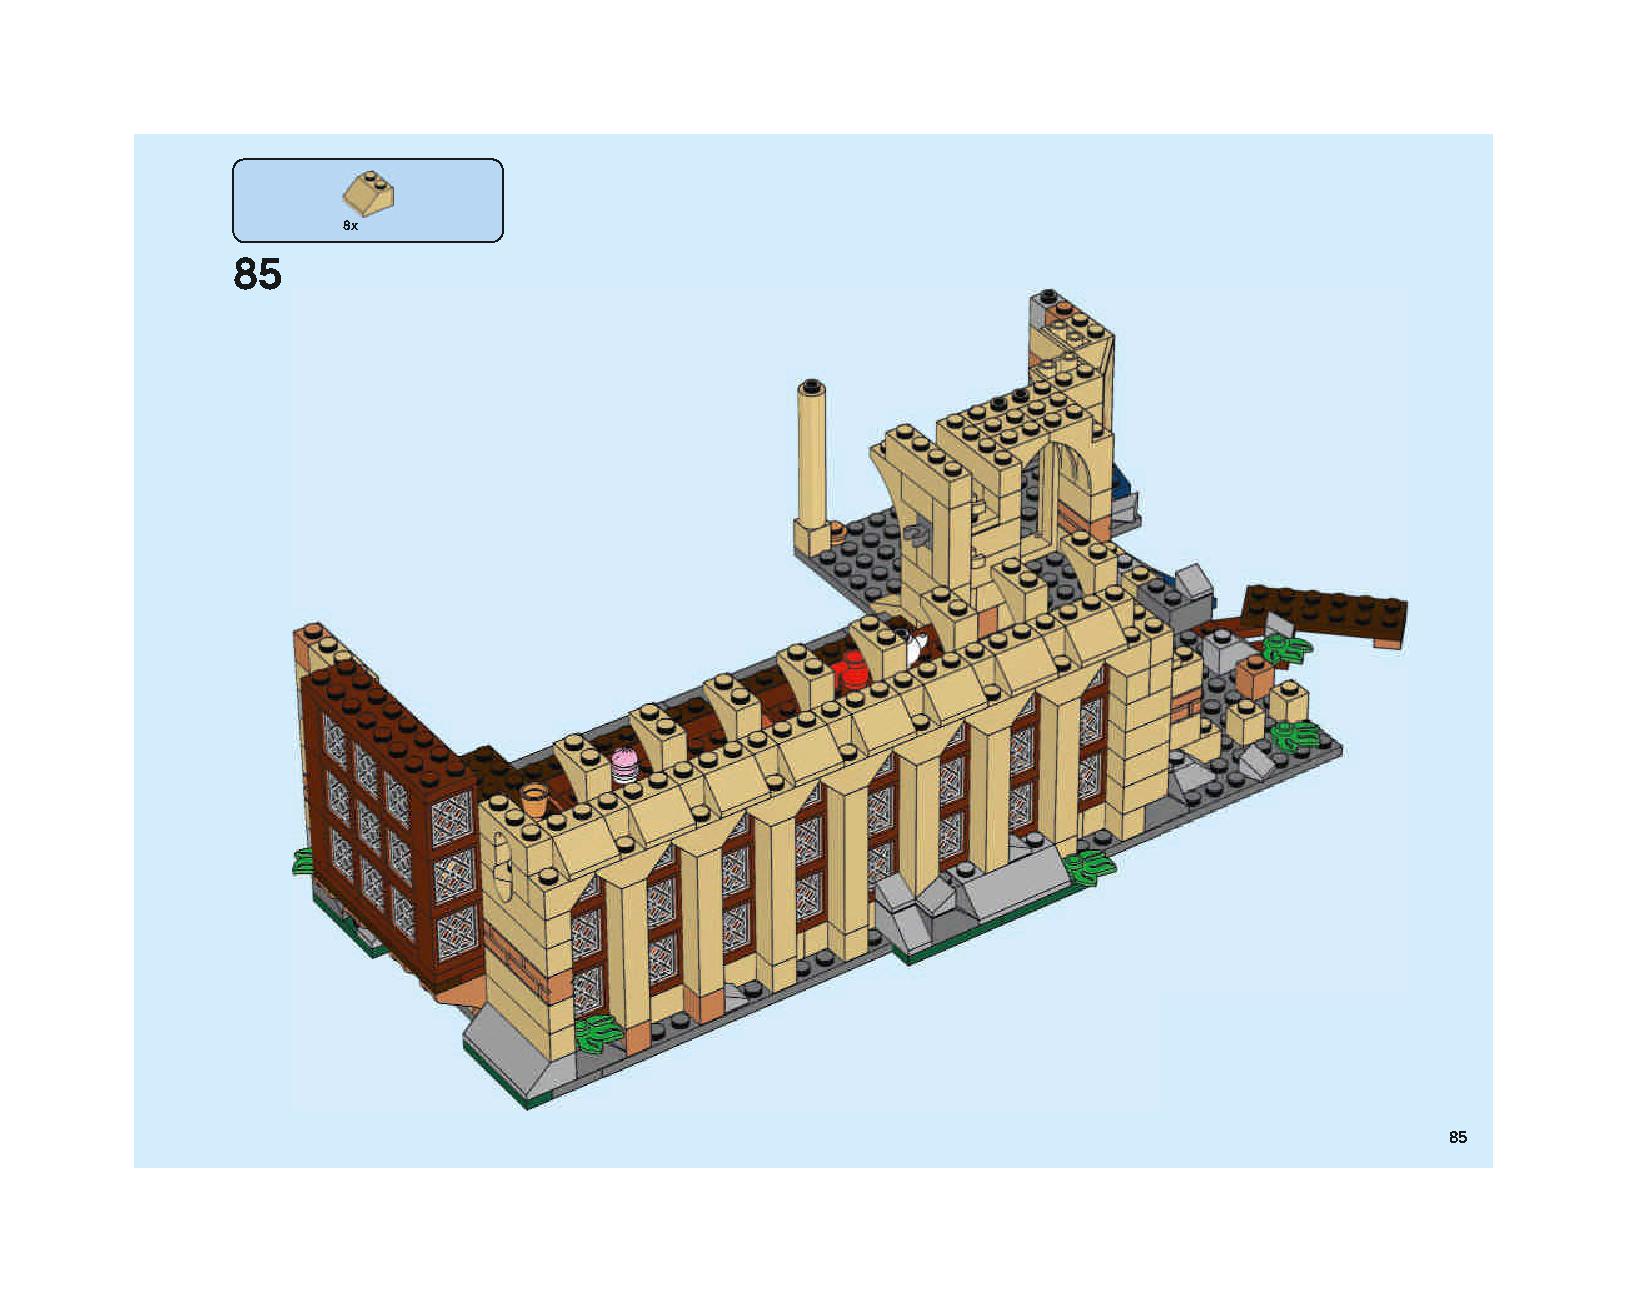 ホグワーツの大広間 75954 レゴの商品情報 レゴの説明書・組立方法 85 page